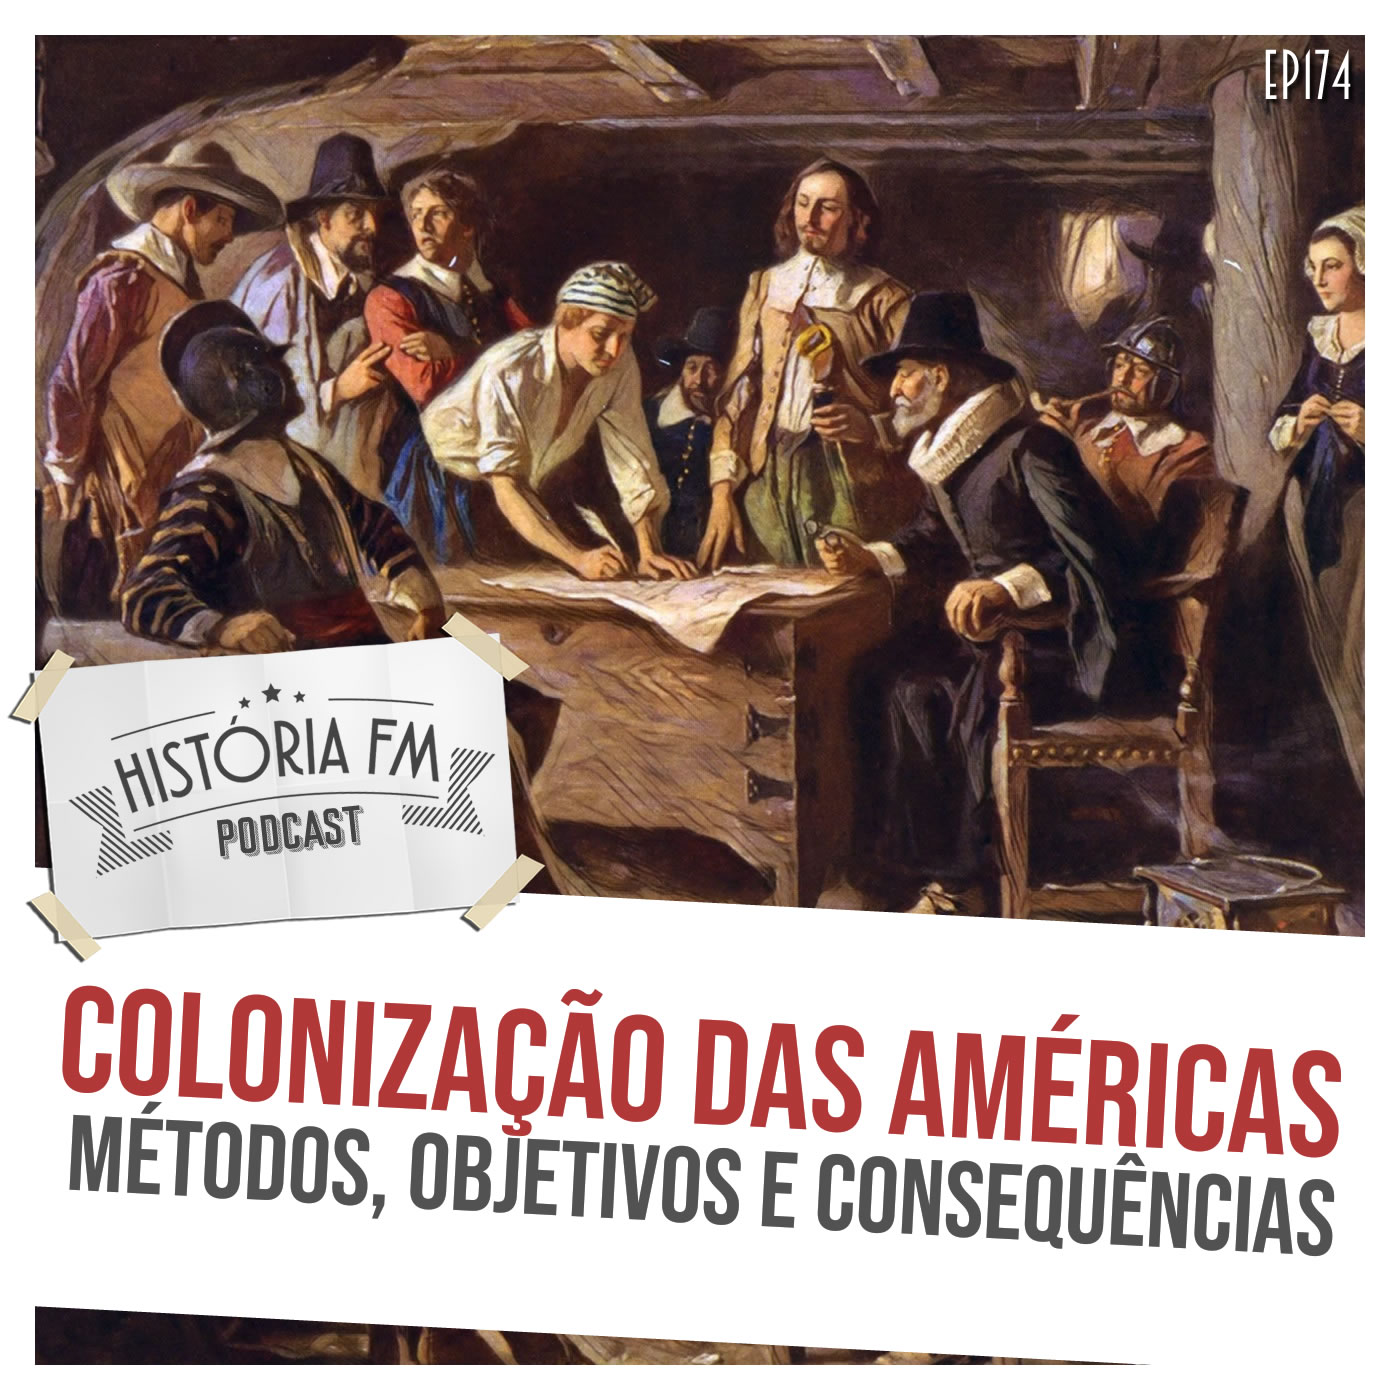 Colonização das Américas: métodos, objetivos e consequências